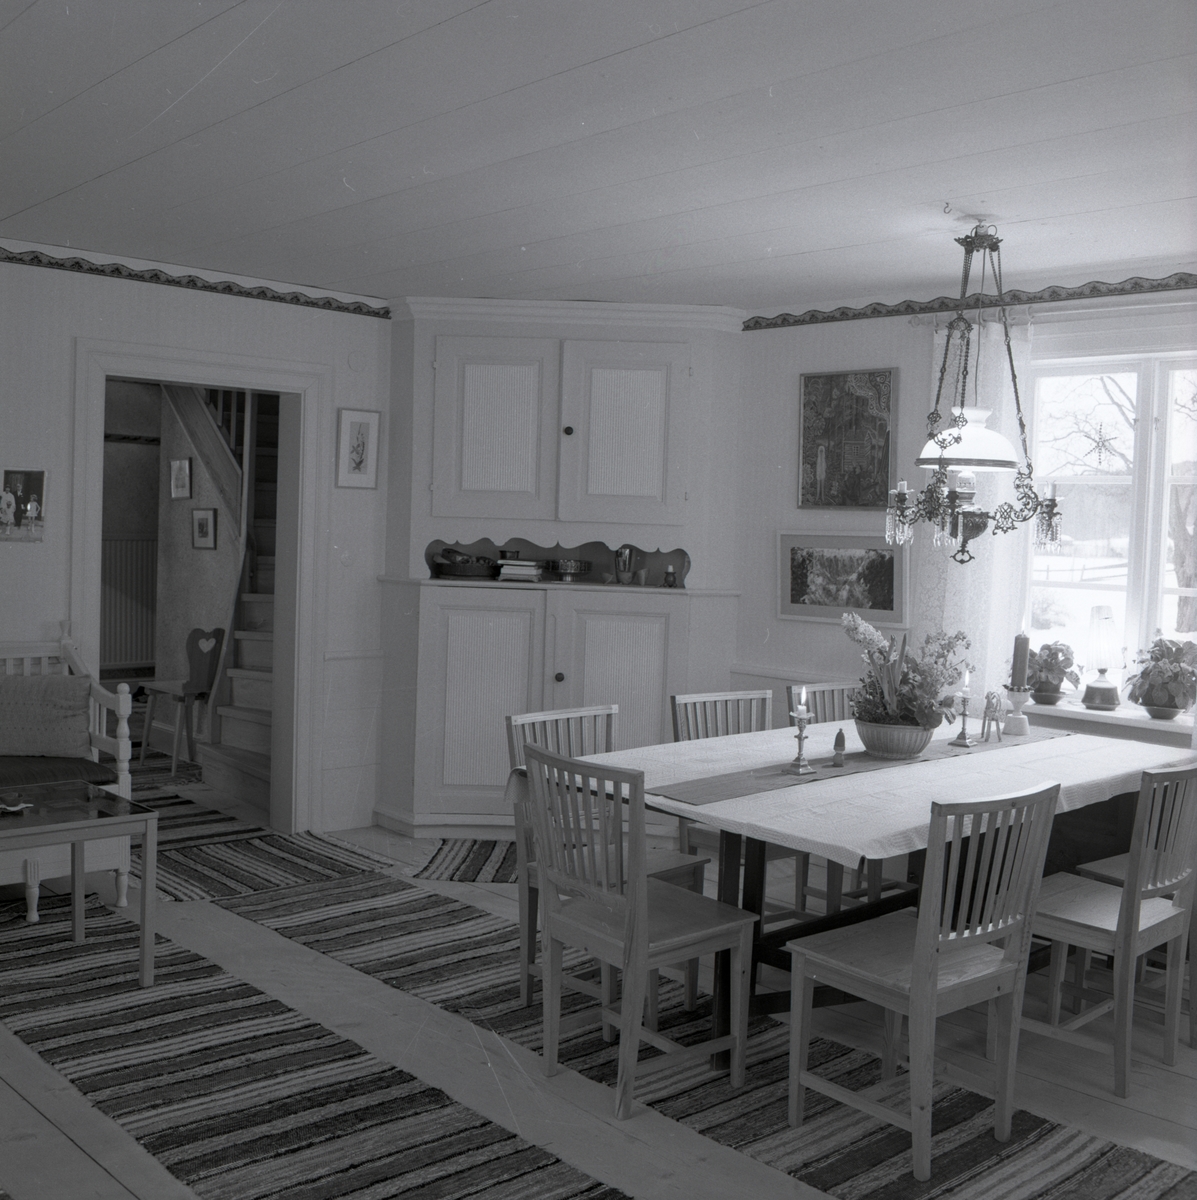 Ett rum på gården Sunnanåker med ett hörnskåp samt ett bord med stolar och taklampa, januari 1970.